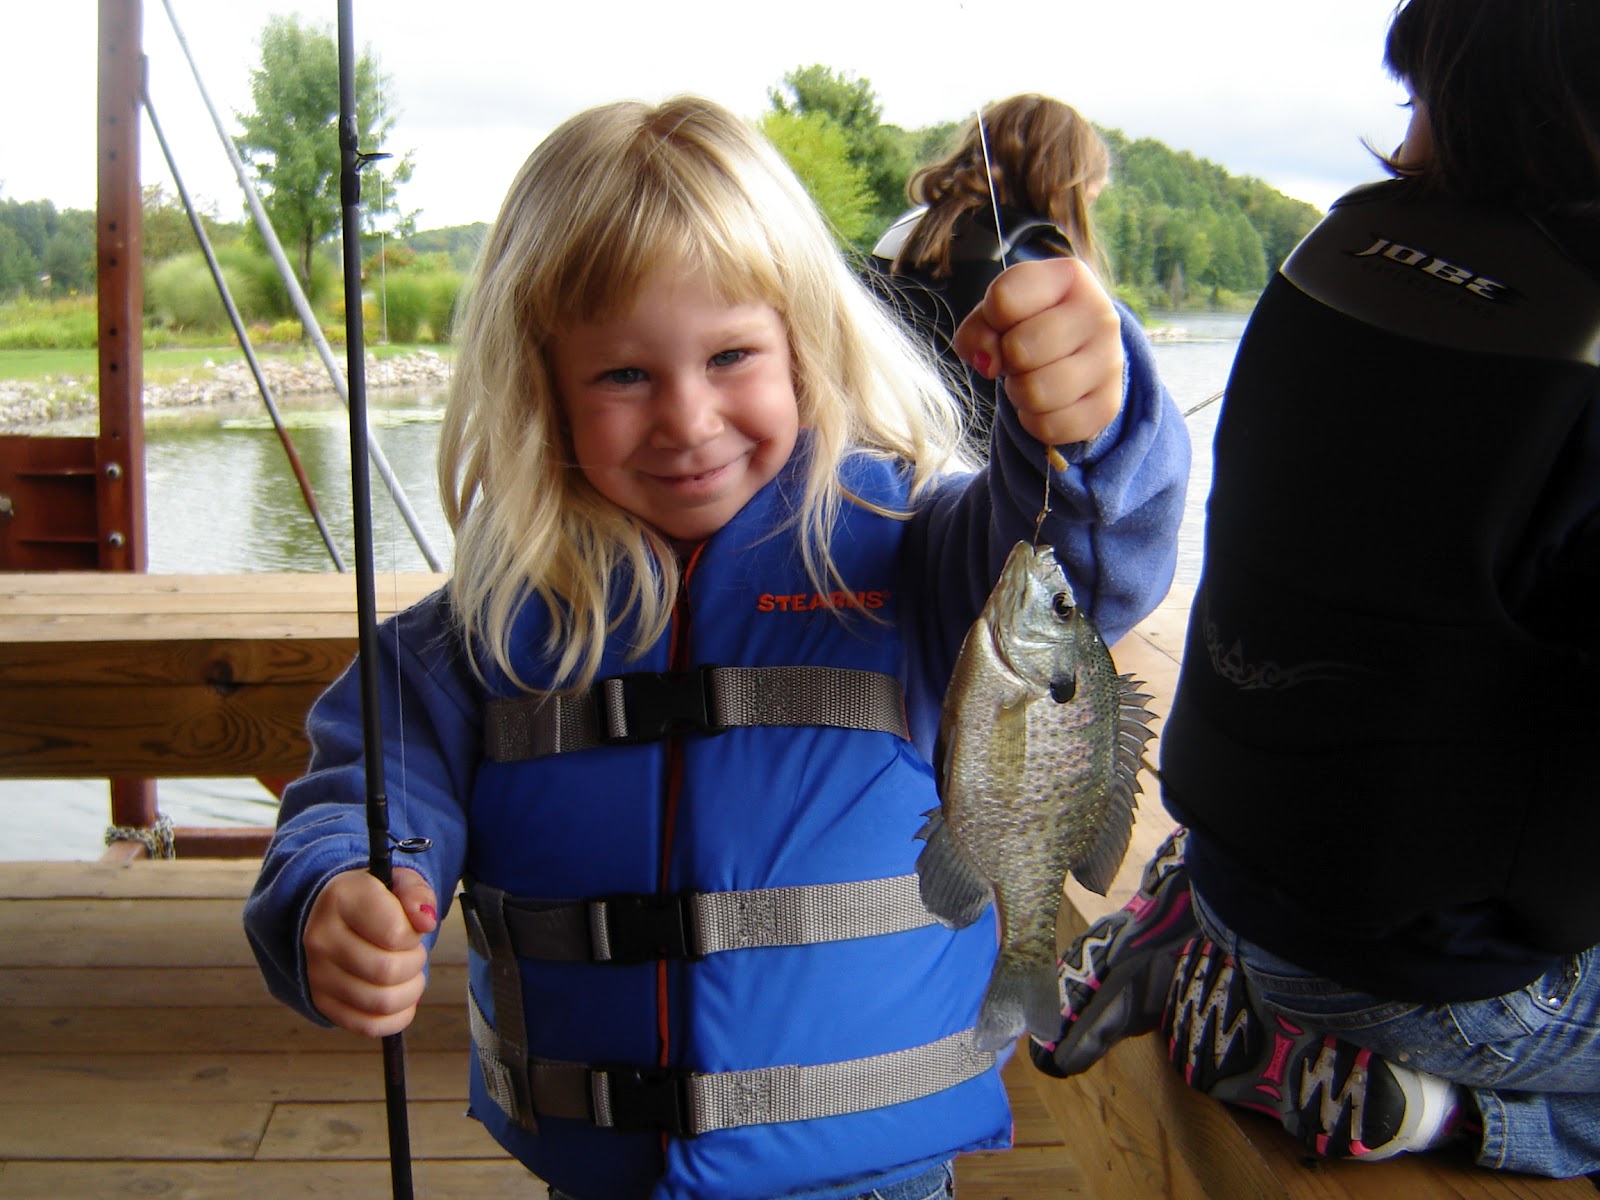 Taking Kids Fishing